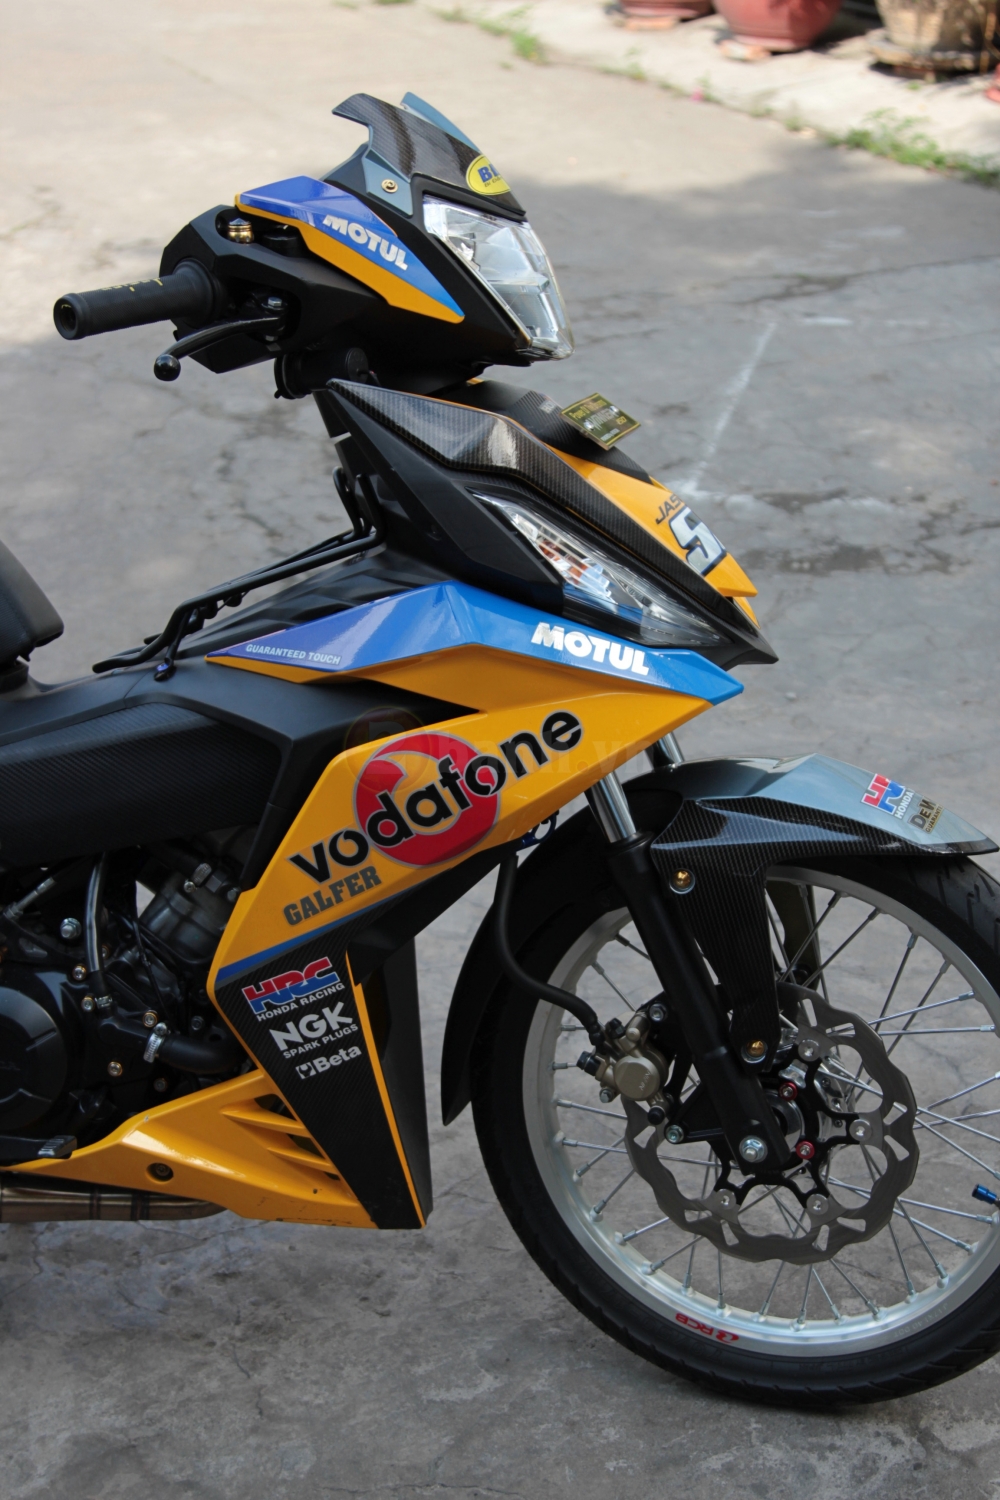 Winner 150 noi bat voi phong cach Vodafone cua biker Sai Thanh - 4